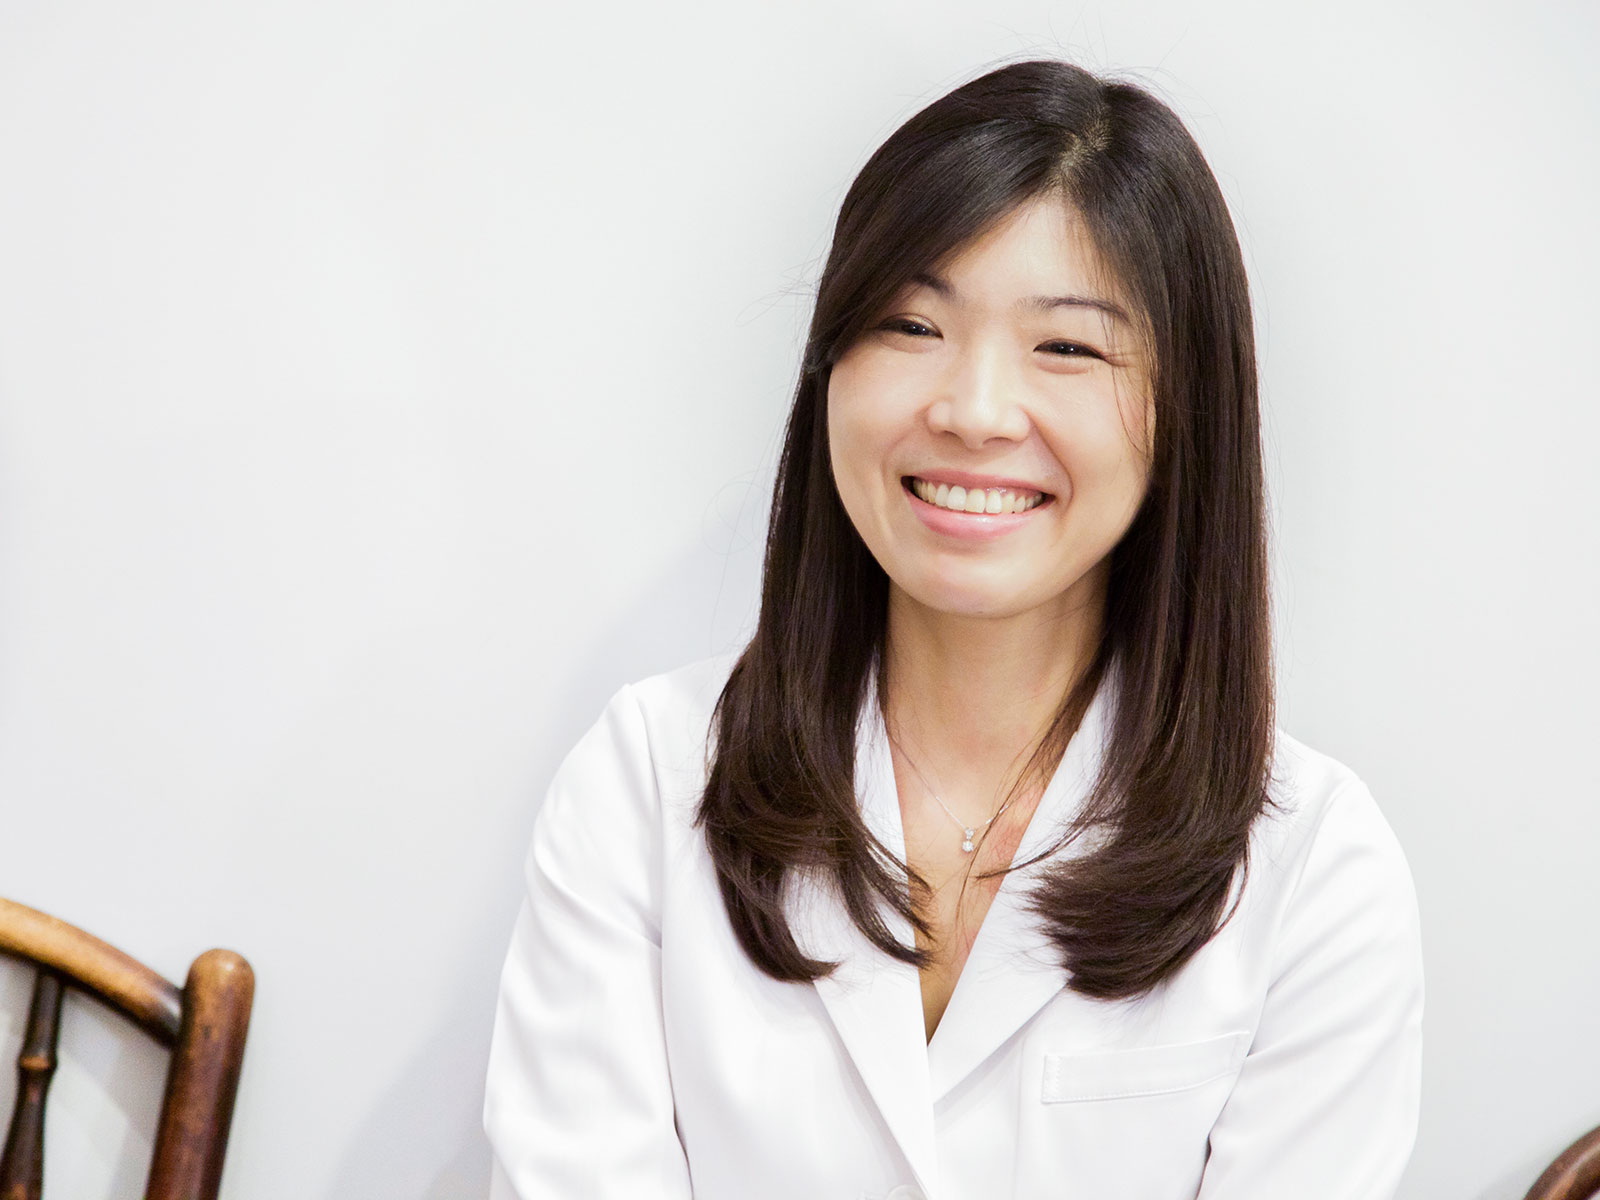 玉田先生の専門は消化器内科で、胃腸の病気を中心に診ていました。